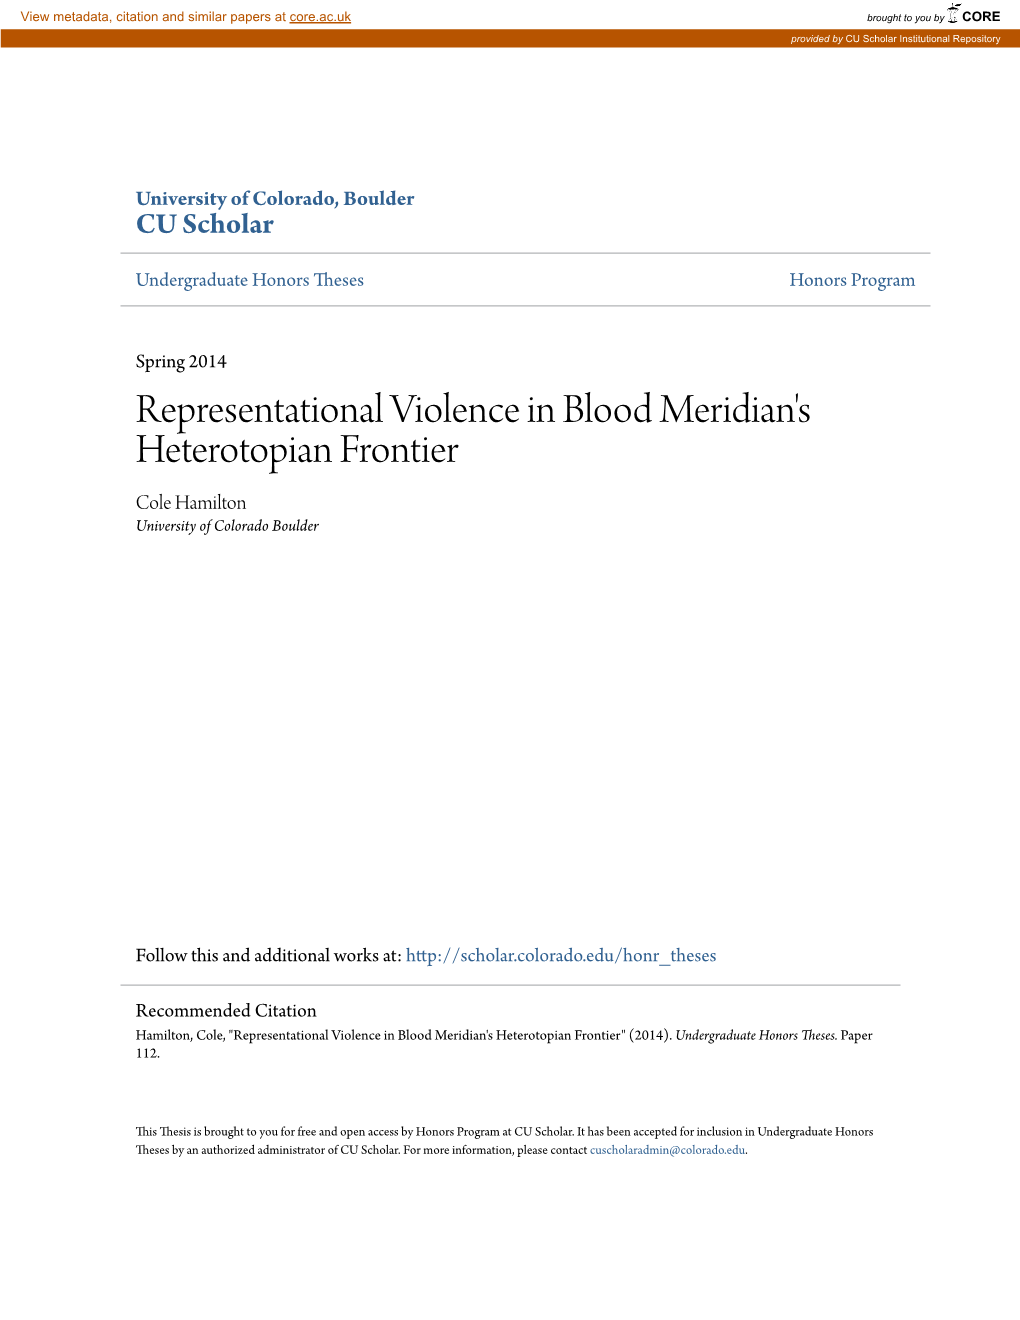 Representational Violence in Blood Meridian's Heterotopian Frontier Cole Hamilton University of Colorado Boulder